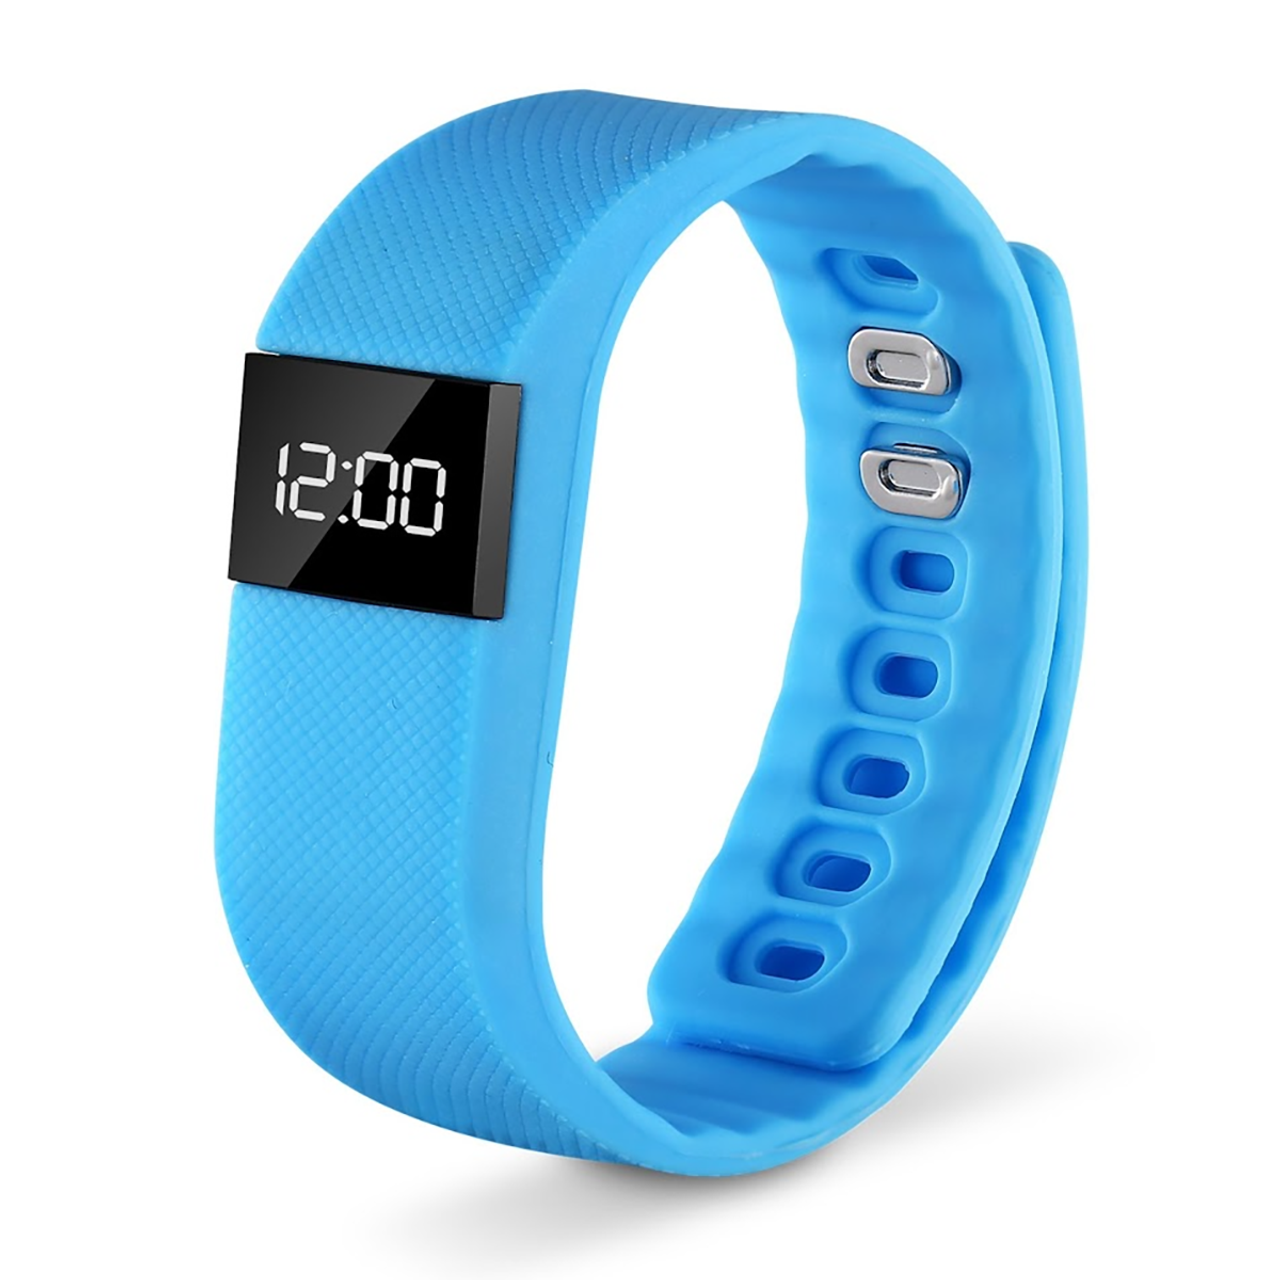 Waterproof Fitness Tracker Wristband Watch product image